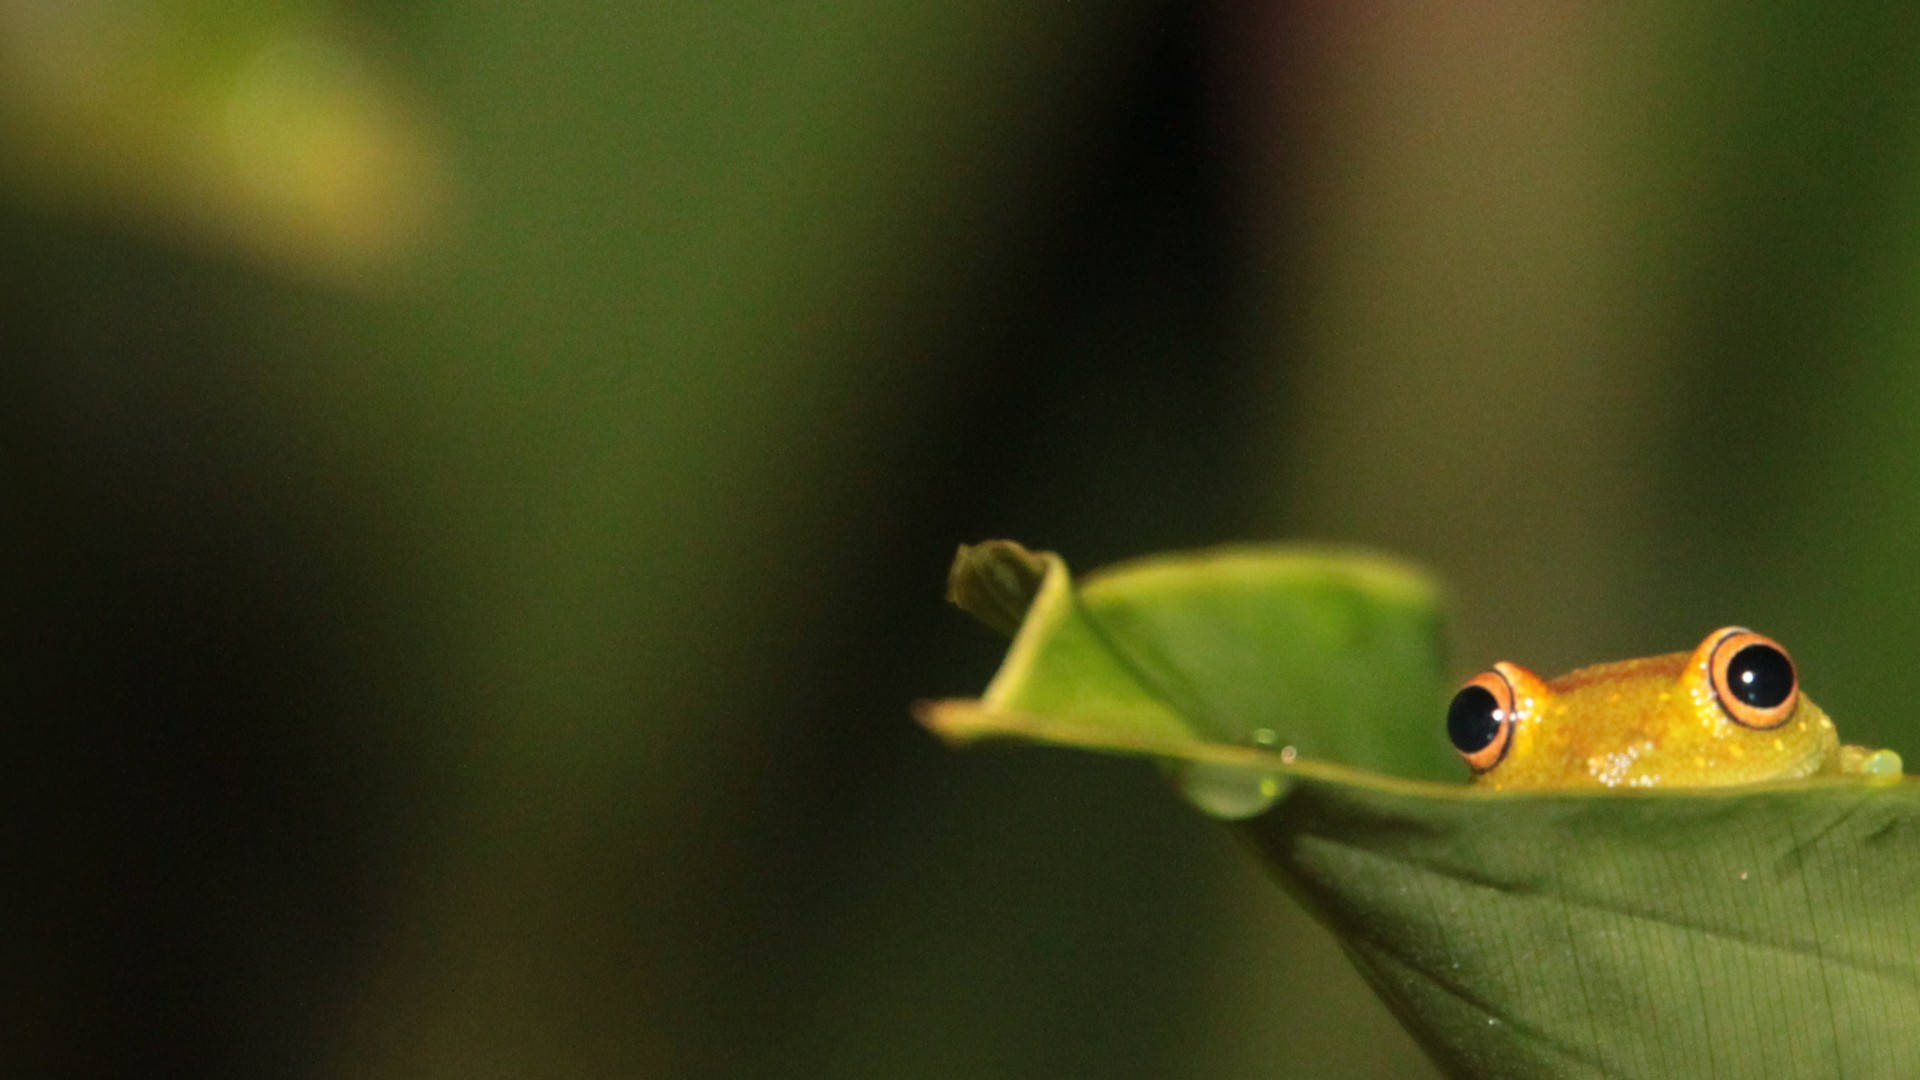 Cute Frog Hiding Inside A Leaf